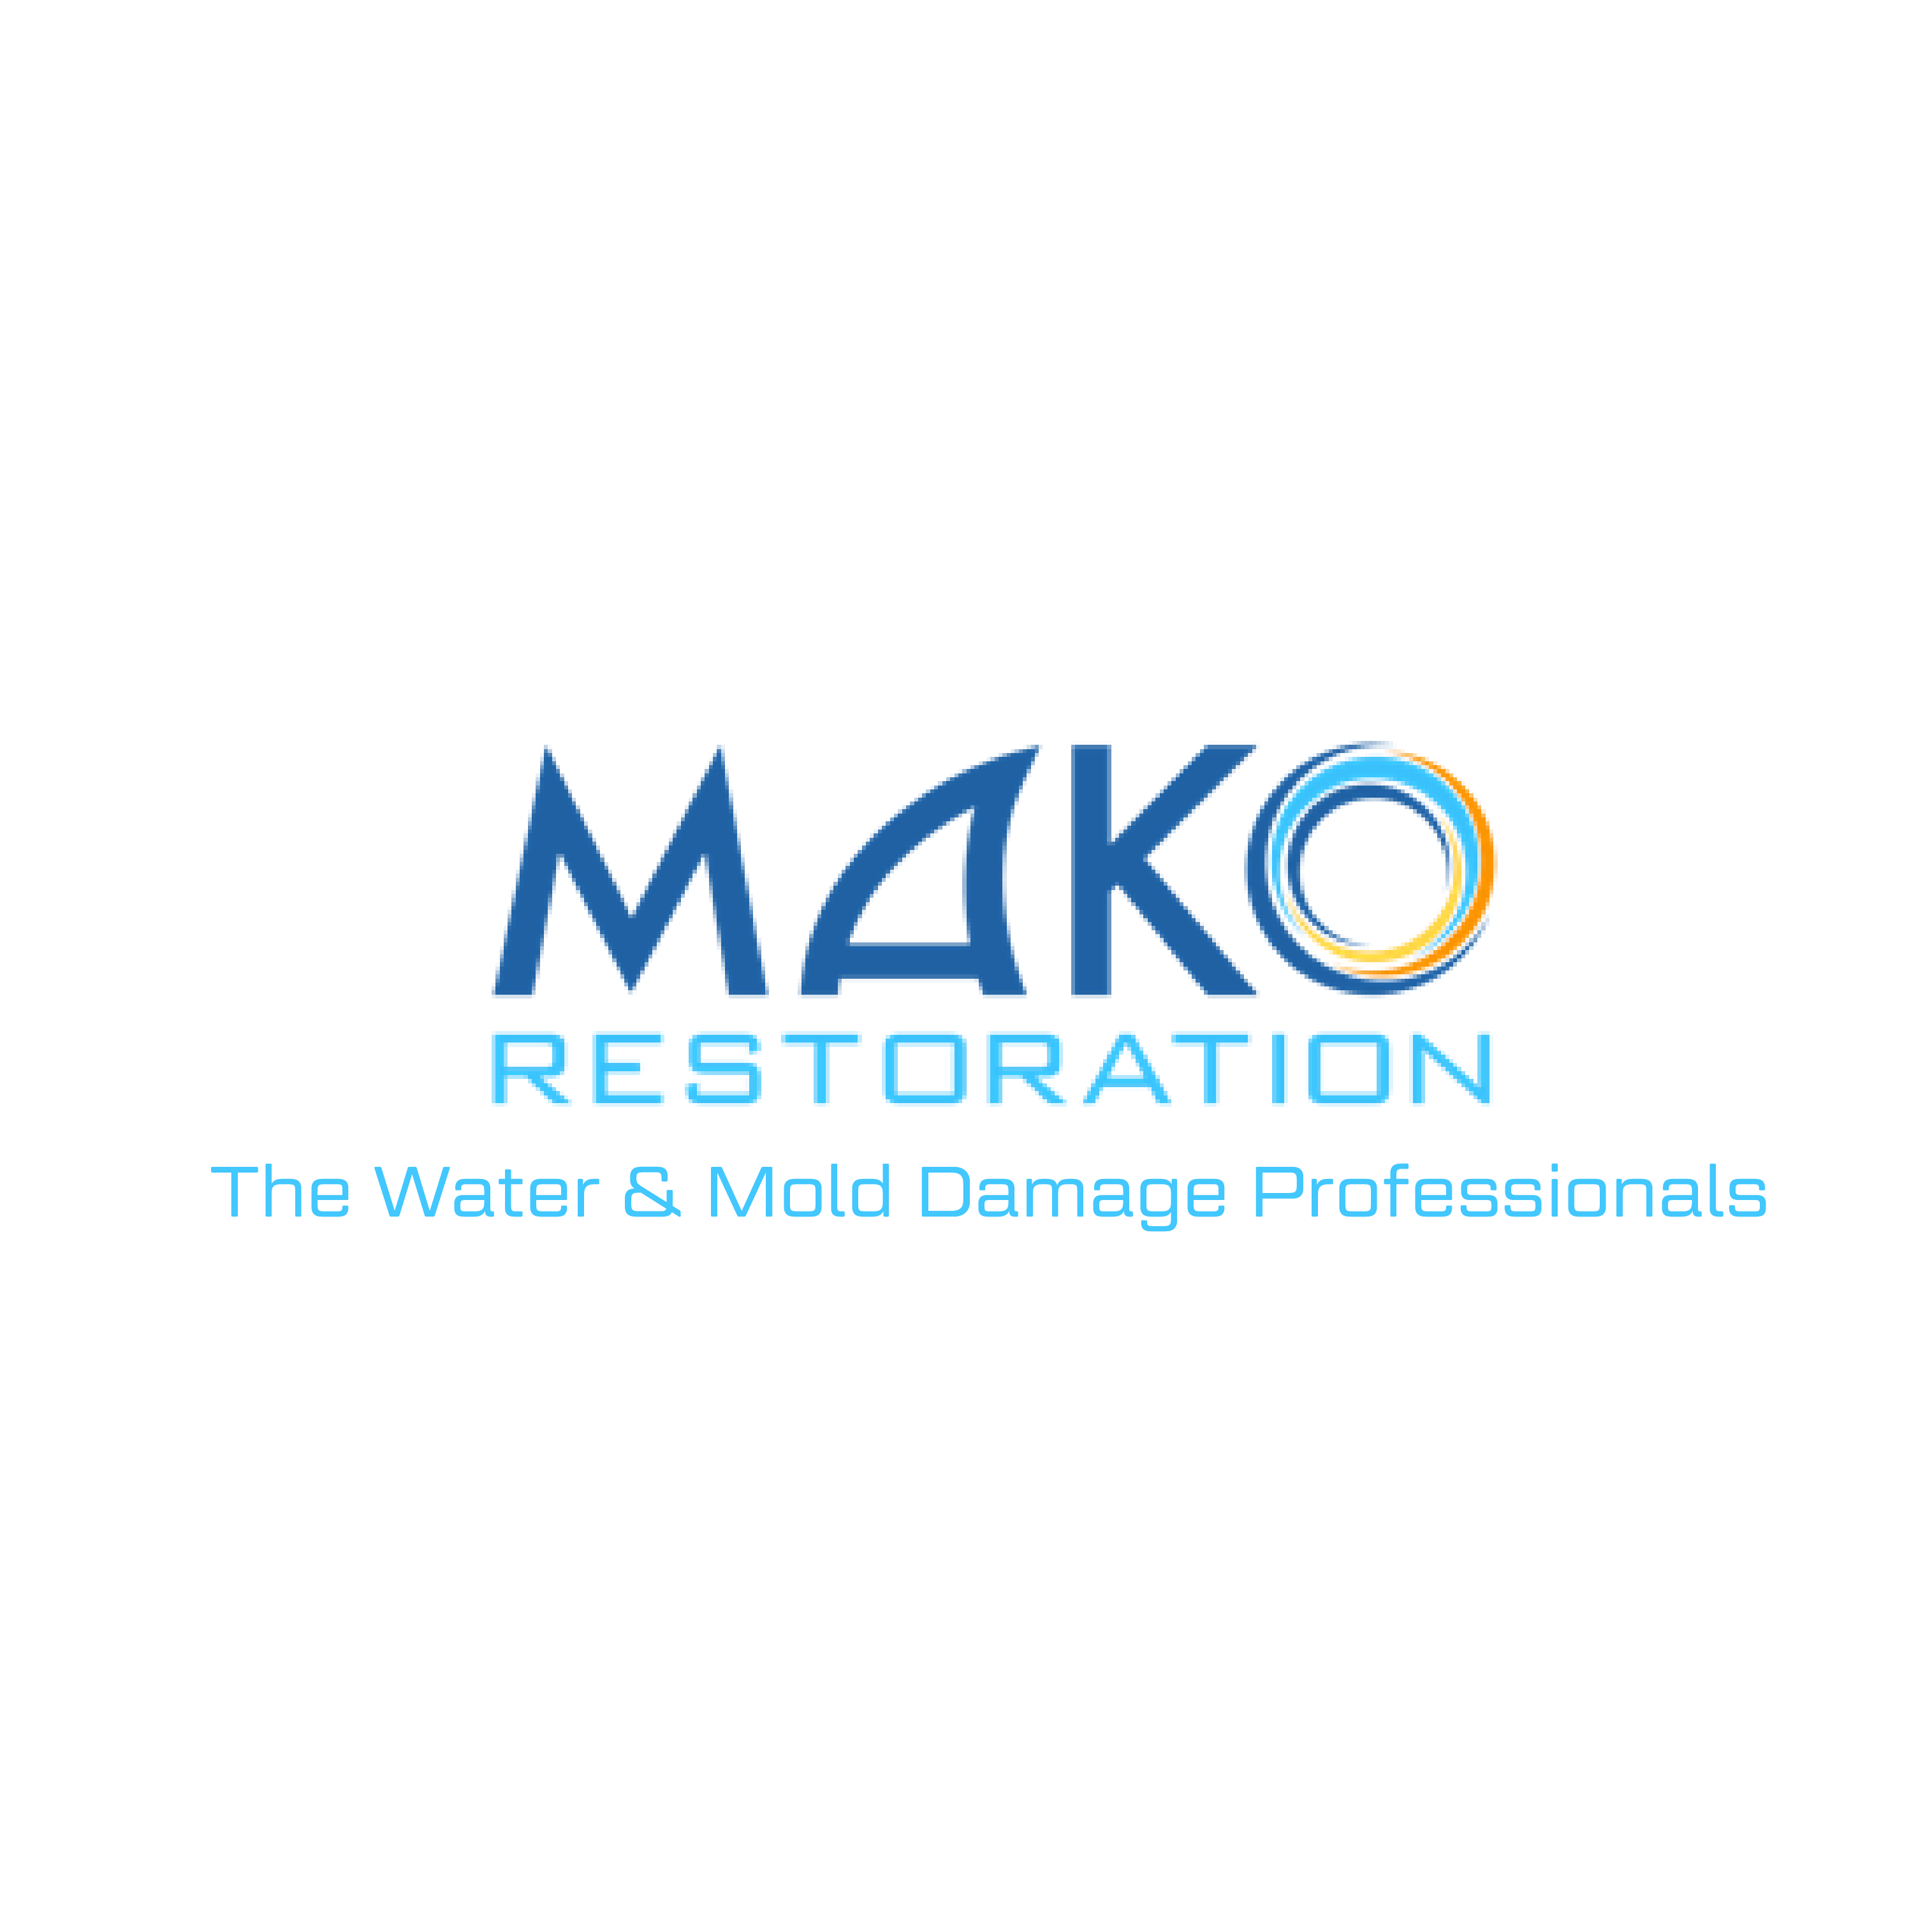 MAKO Restoration